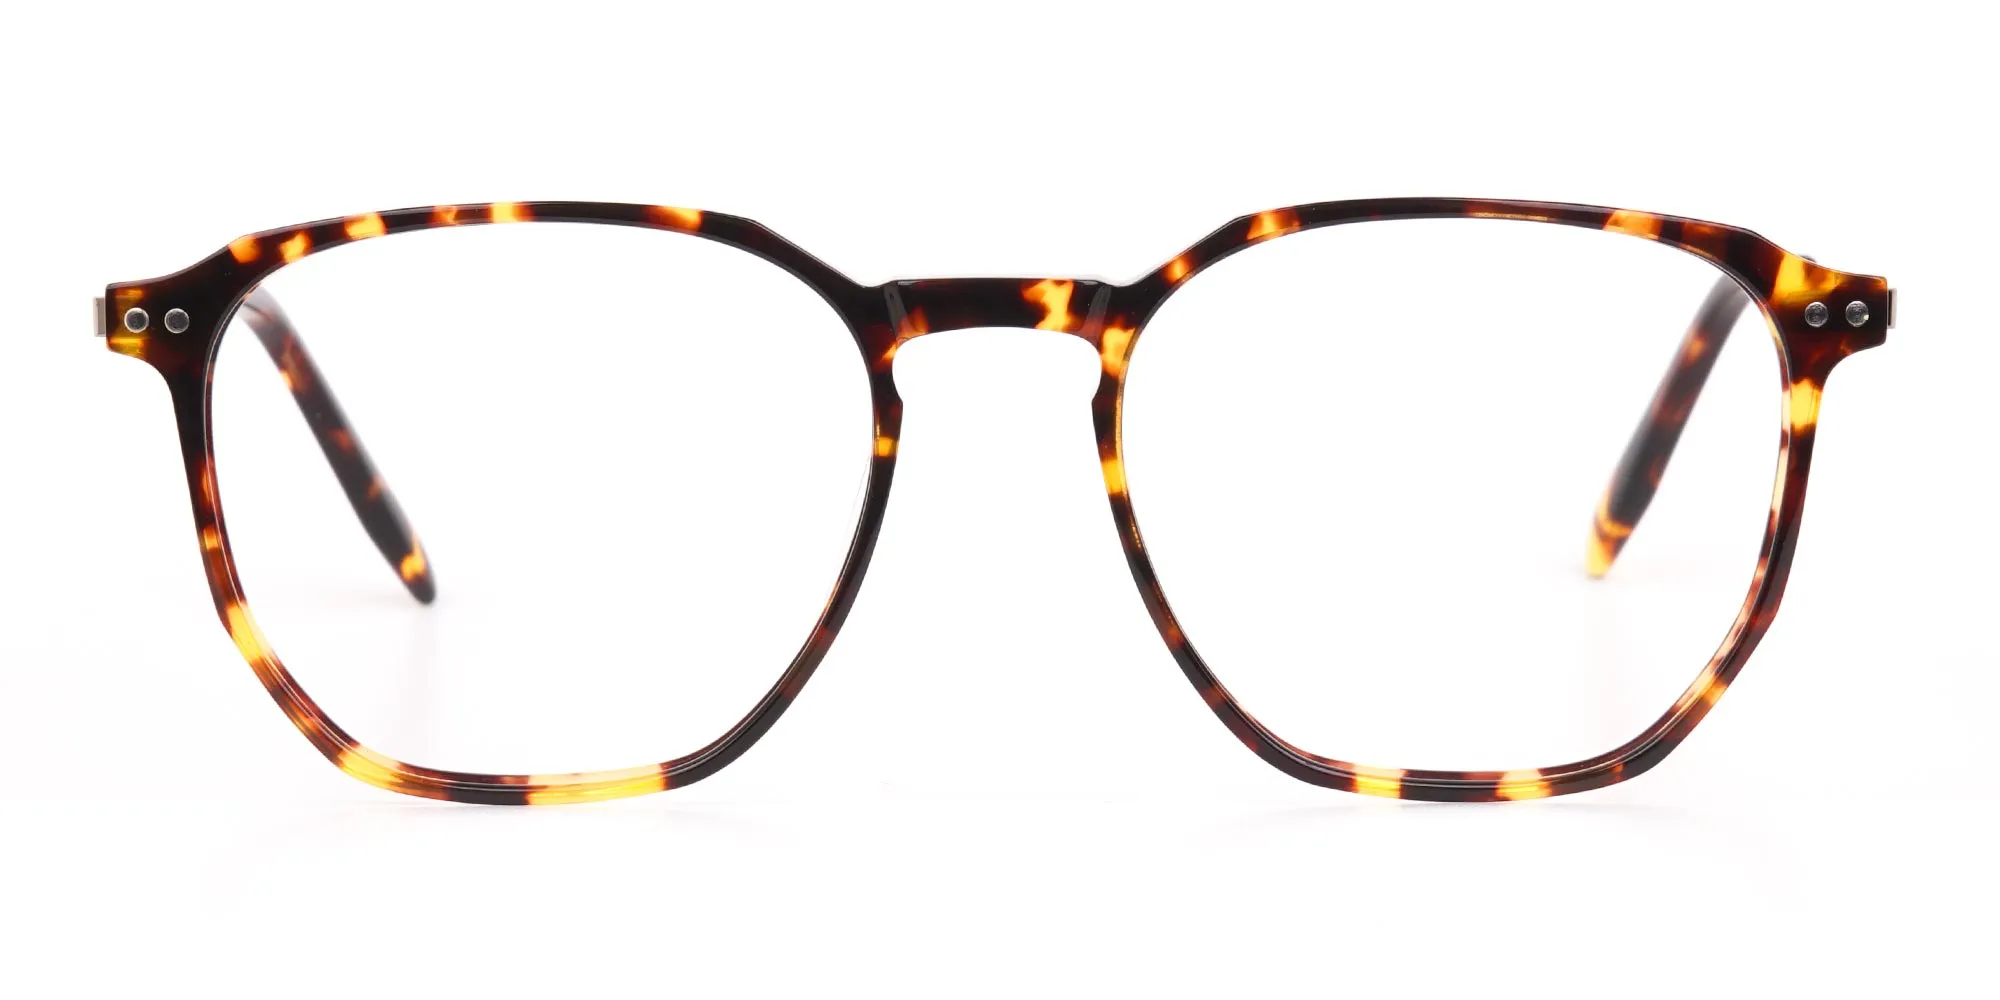 Tortoise Geometric Glasses Frame Unisex-2